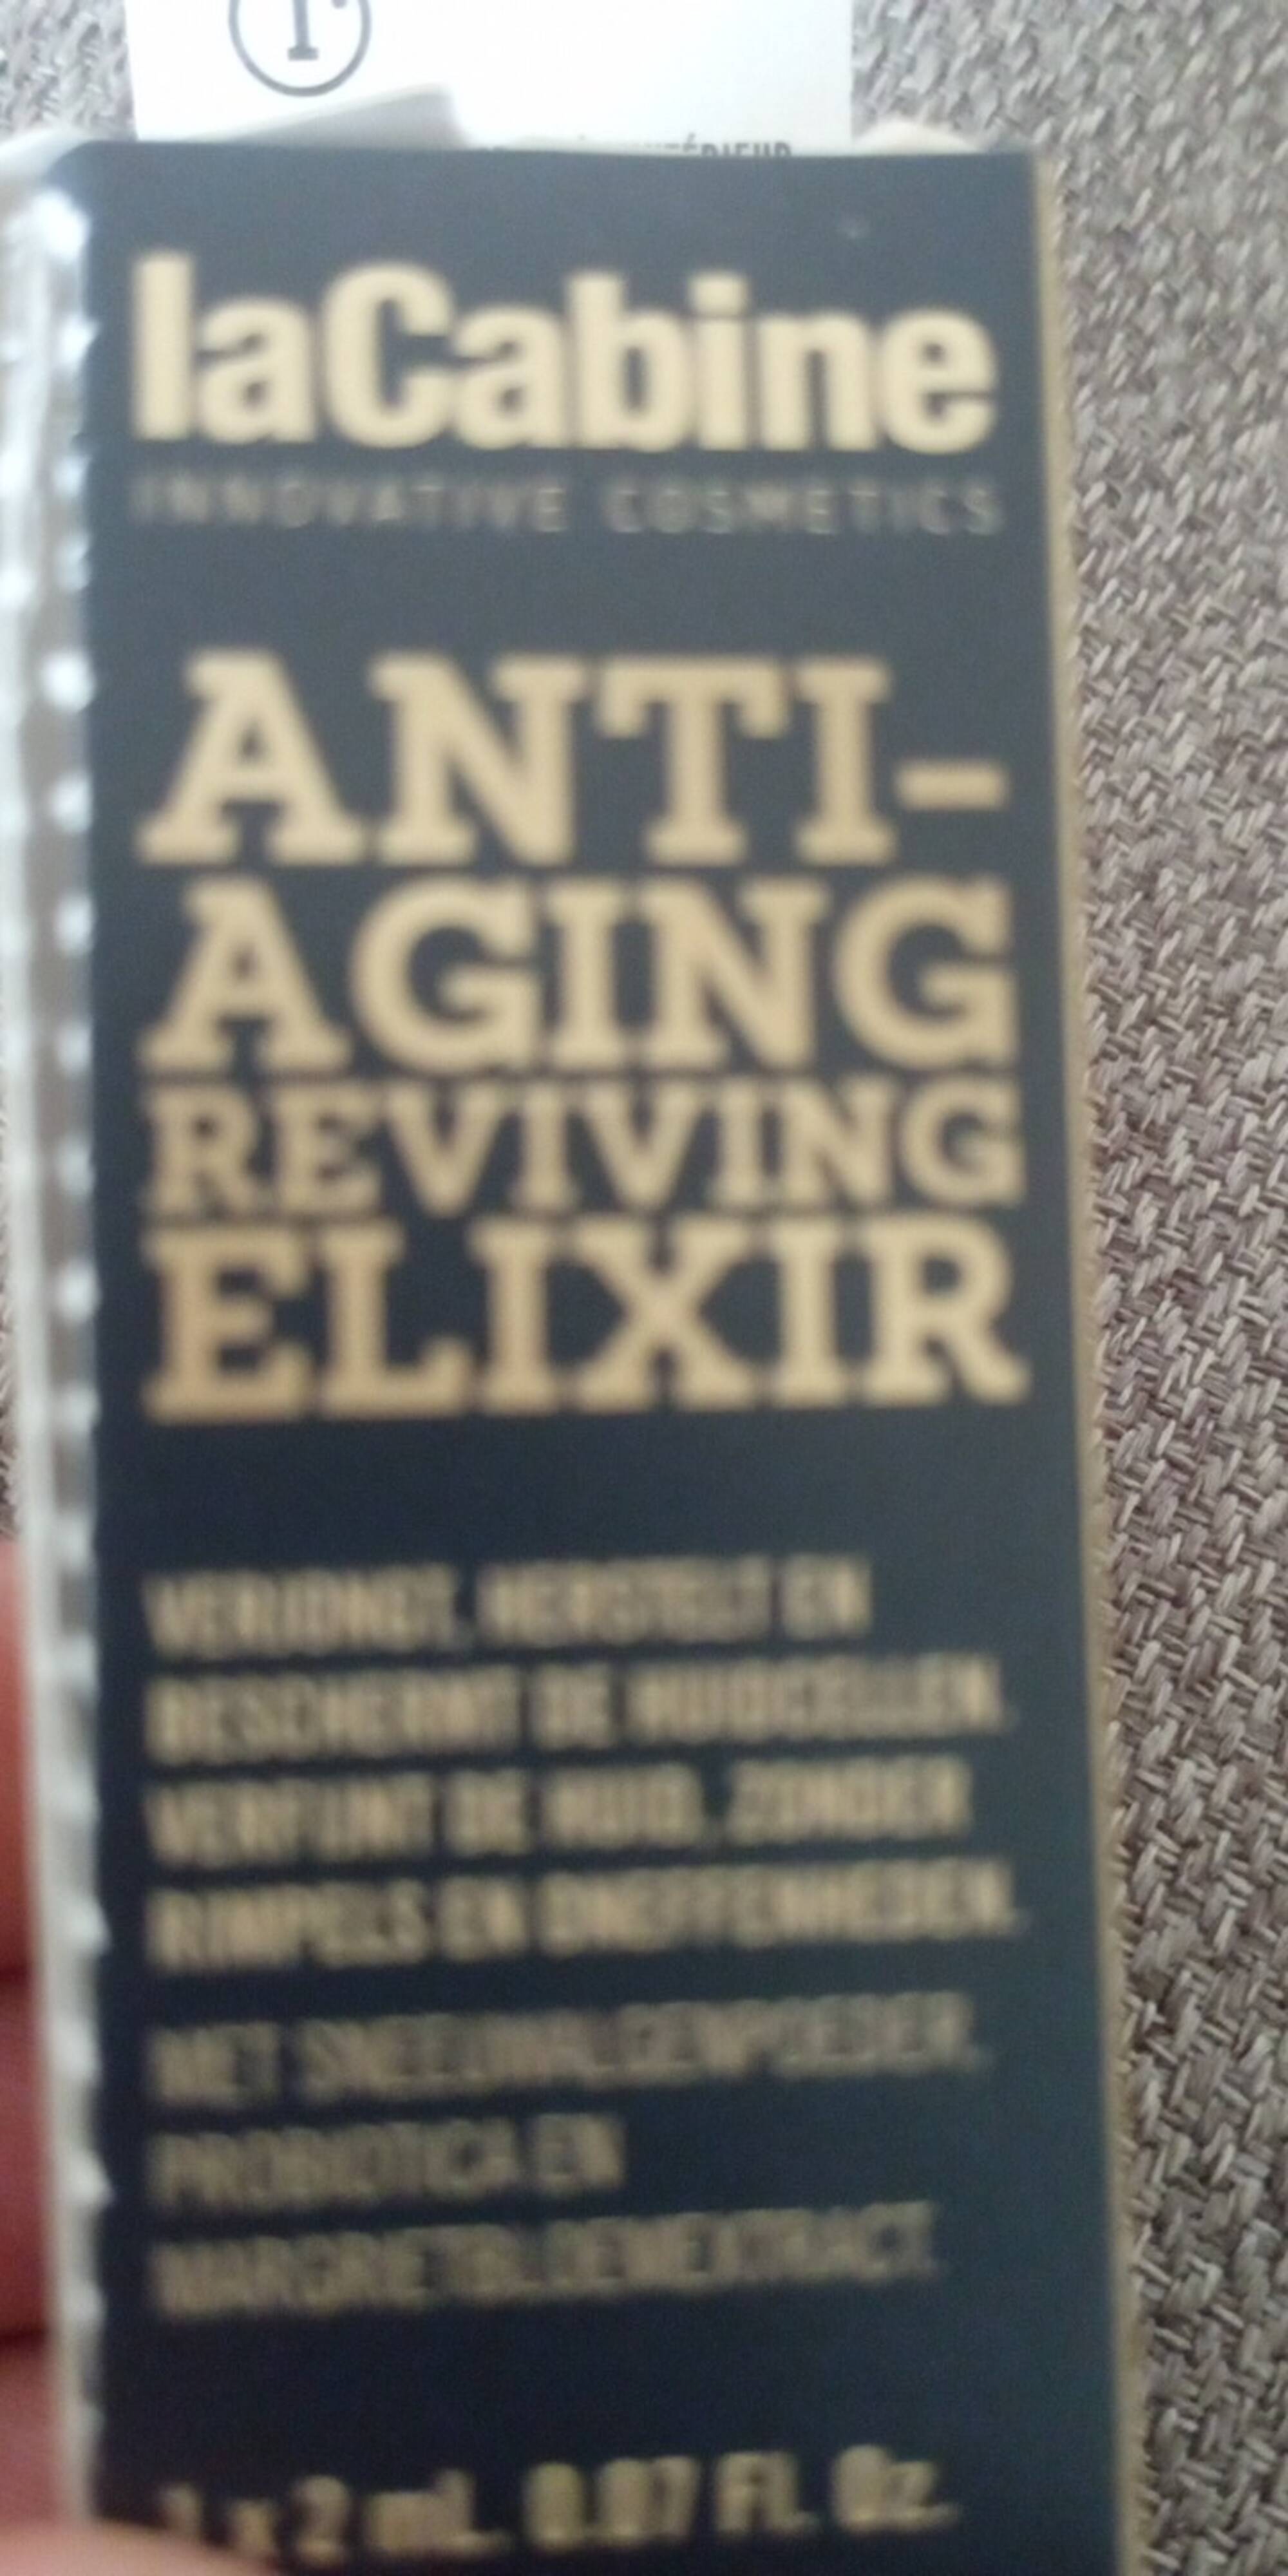 LA CABINE - Anti-aging reviving elixir